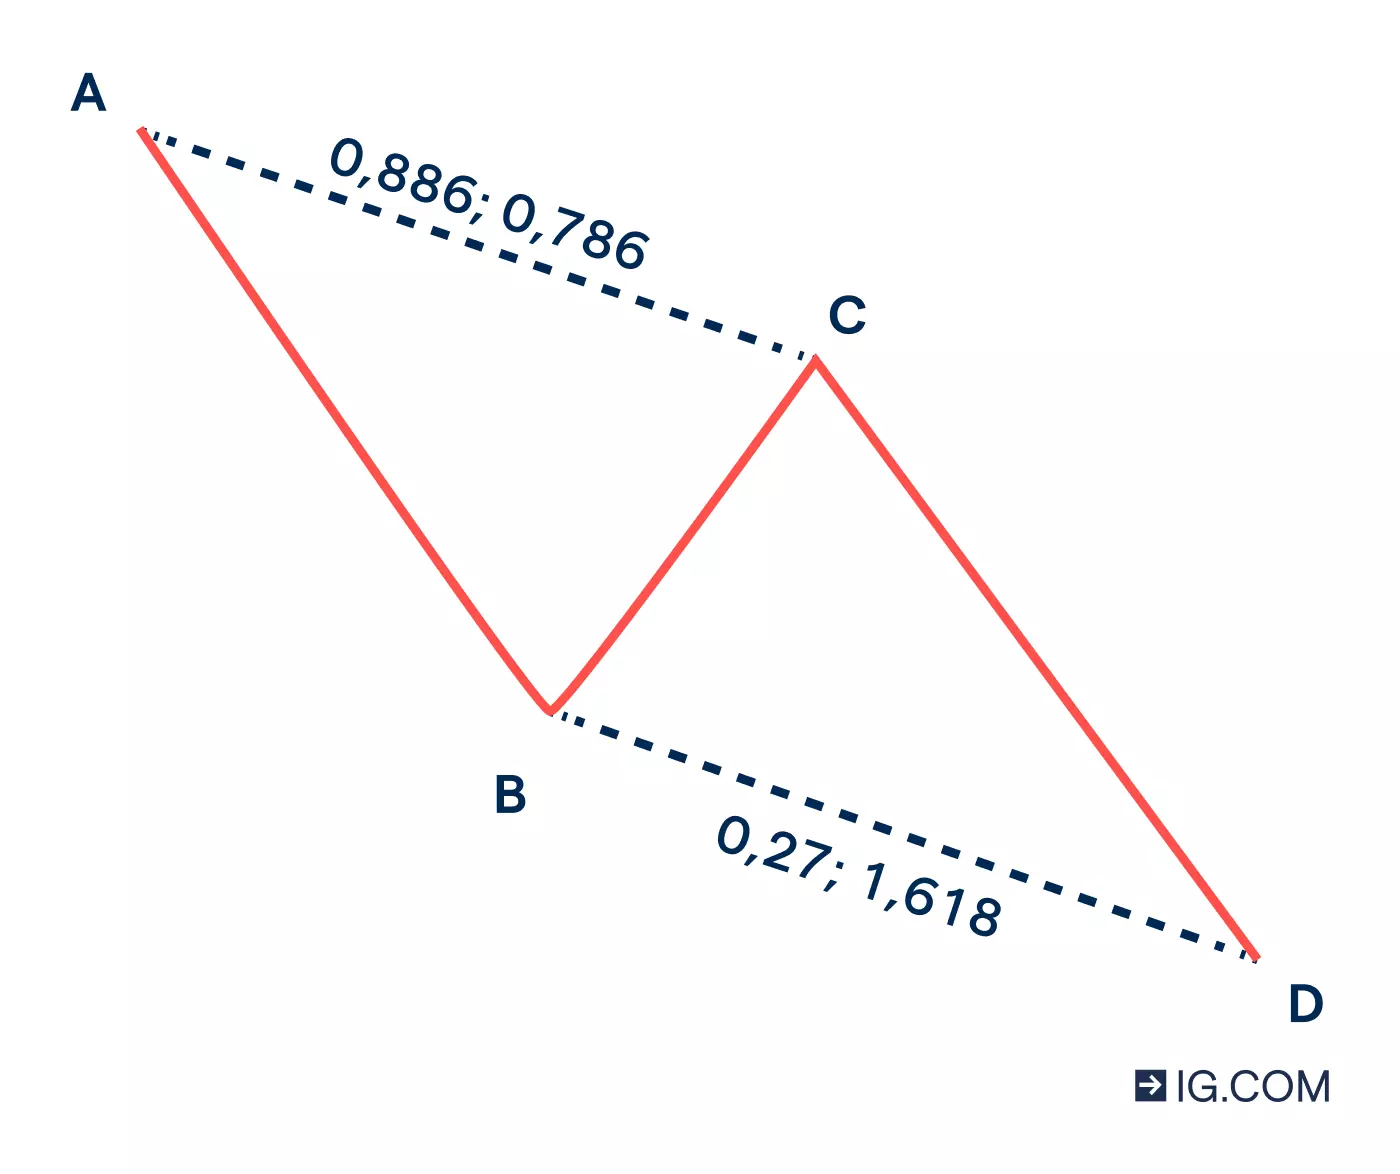 Grafico a linee che mostra le diverse fasi del pattern ABCD mentre attraversa una traiettoria di rialzo e ribasso nel suo ciclo